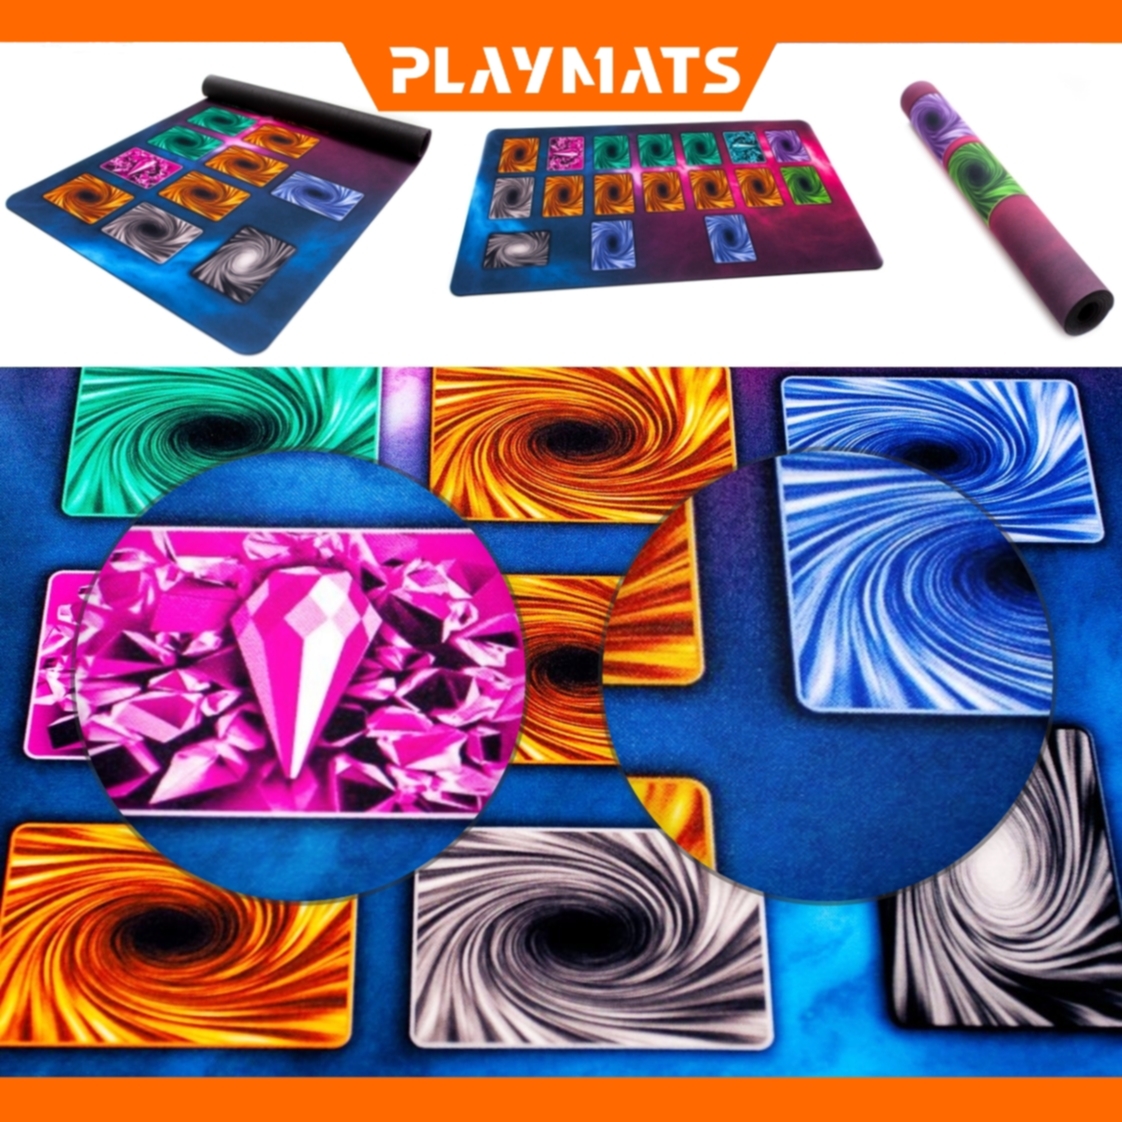 Yu-Gi-Oh! playmats by Playmats.eu - zoom on YuGiOh playmats - YuGiOh play mat